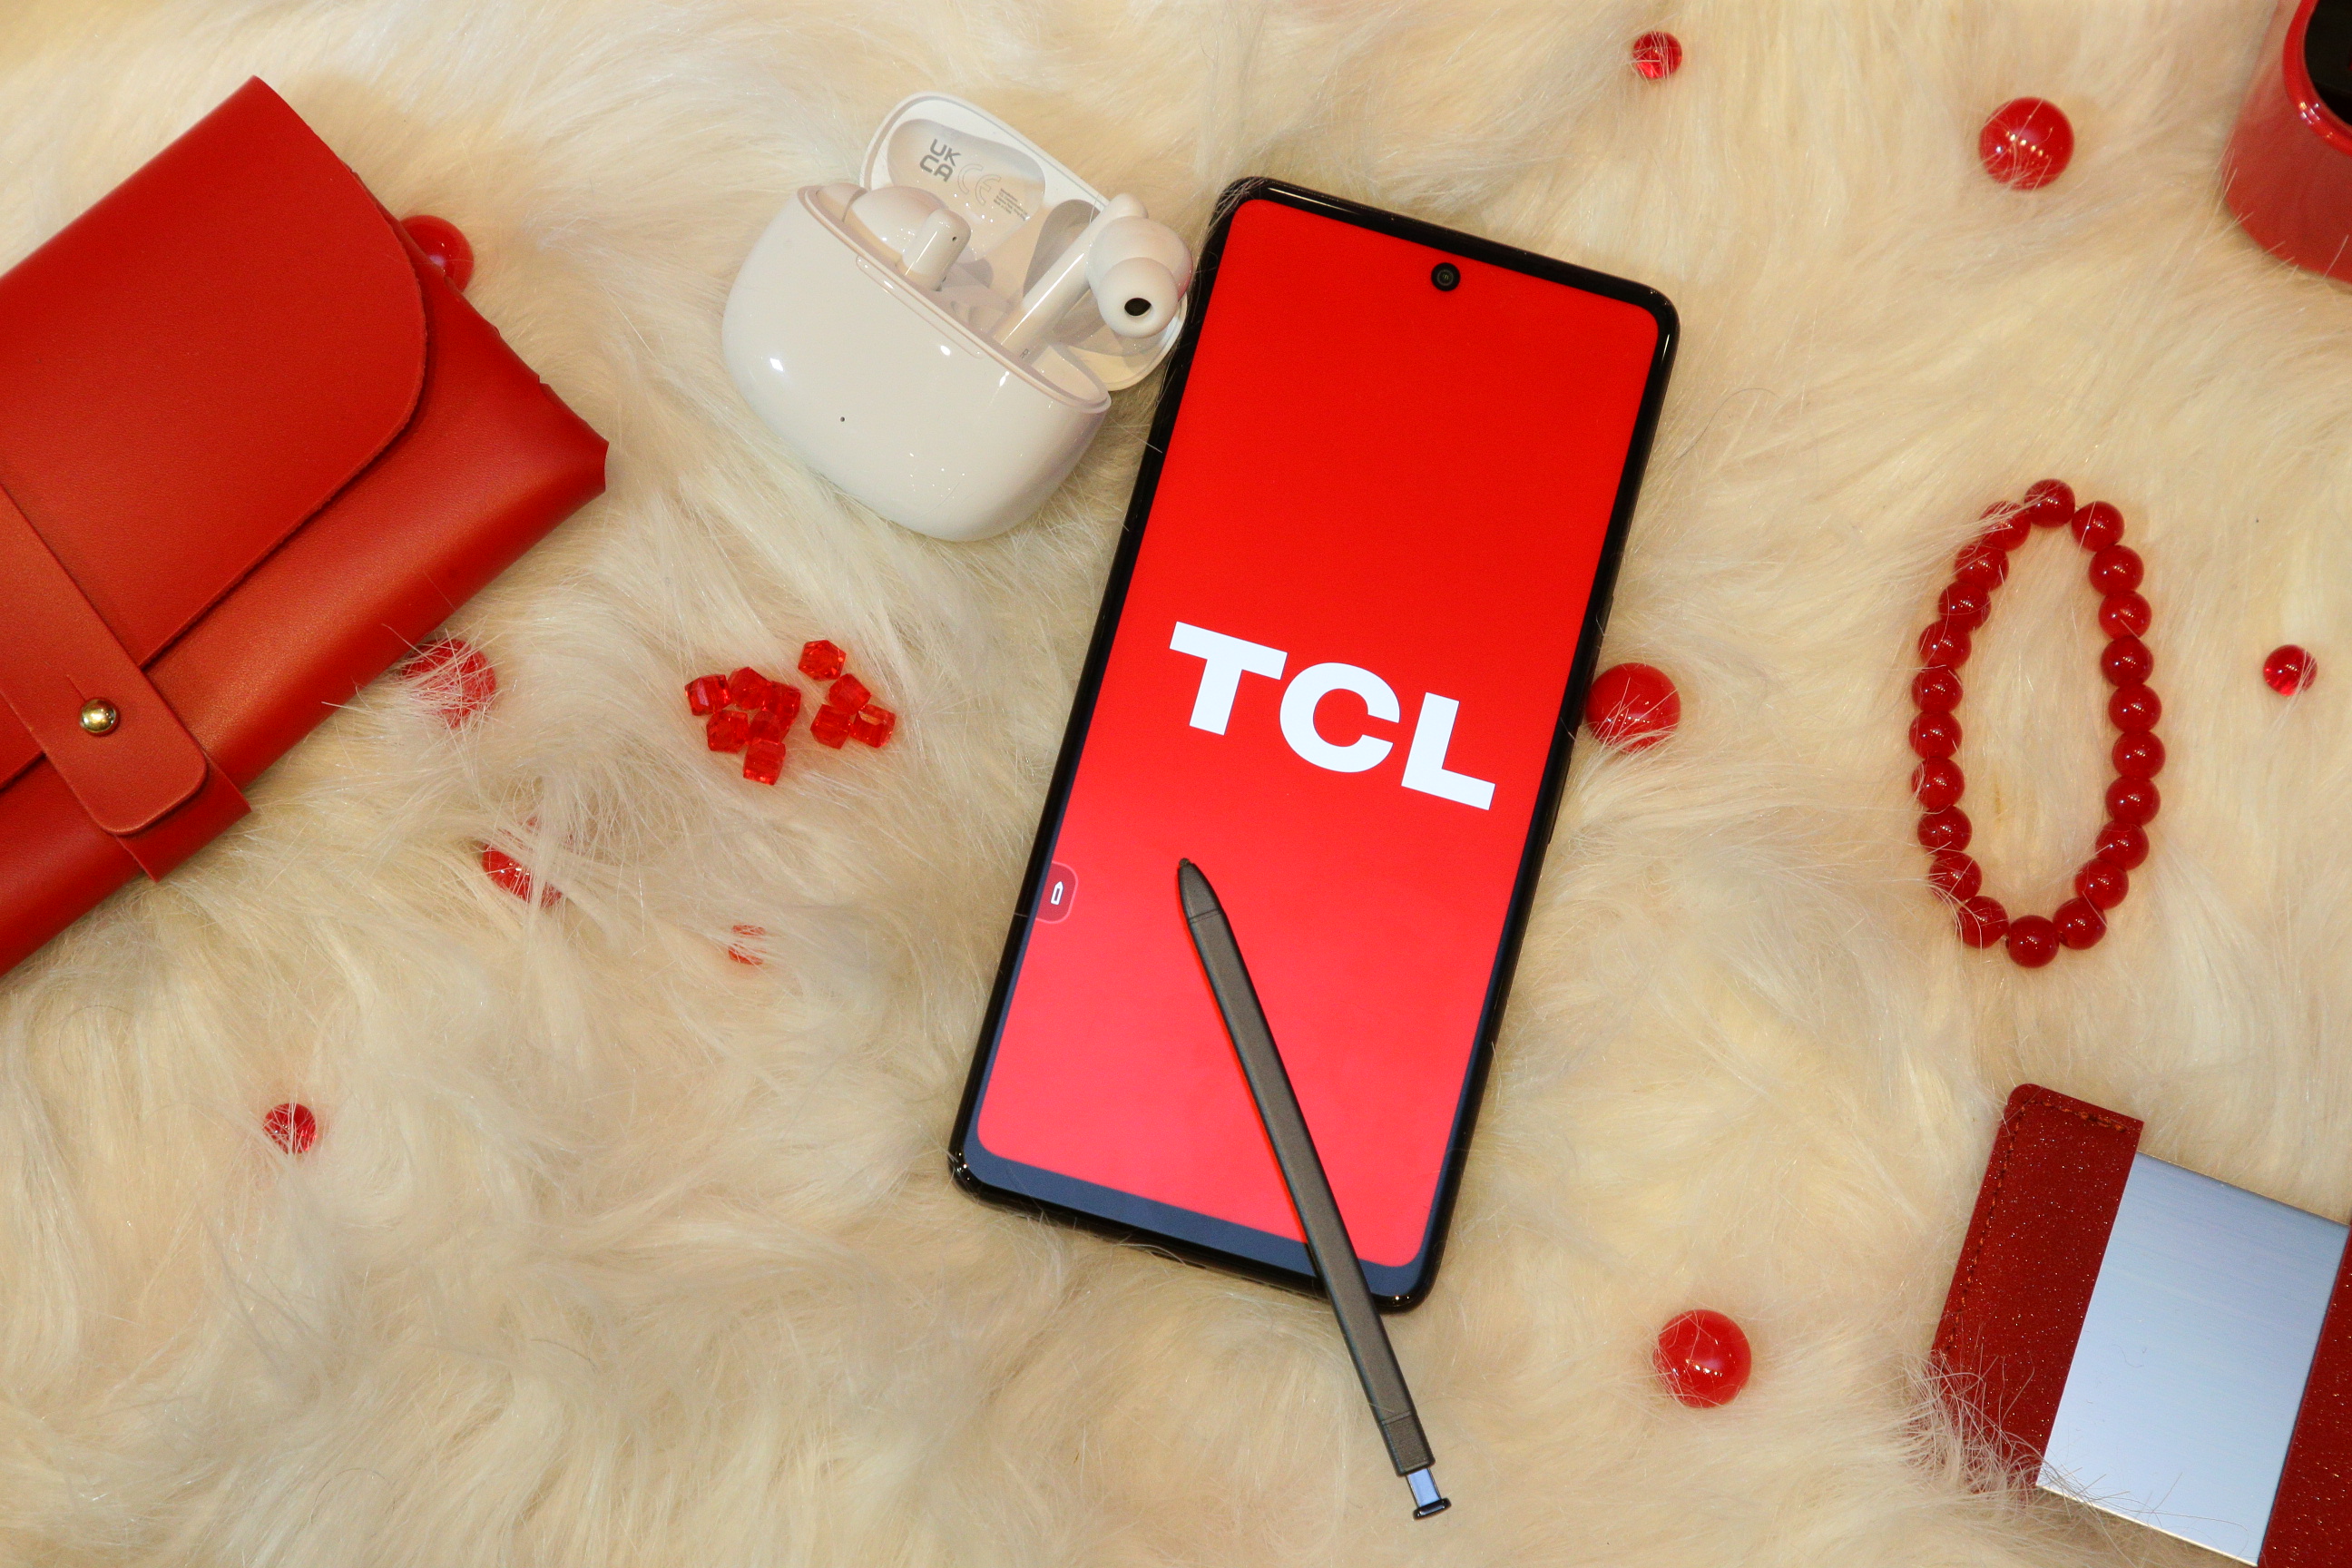 TCL เปิดตัว TCL STYLUS 5G สมาร์ทโฟนพร้อมปากกาในตัวเครื่อง #จดเริ่มต้น สู่จุดเริ่มต้นของความสำเร็จ ครบครันในราคาสุดตะลึง 